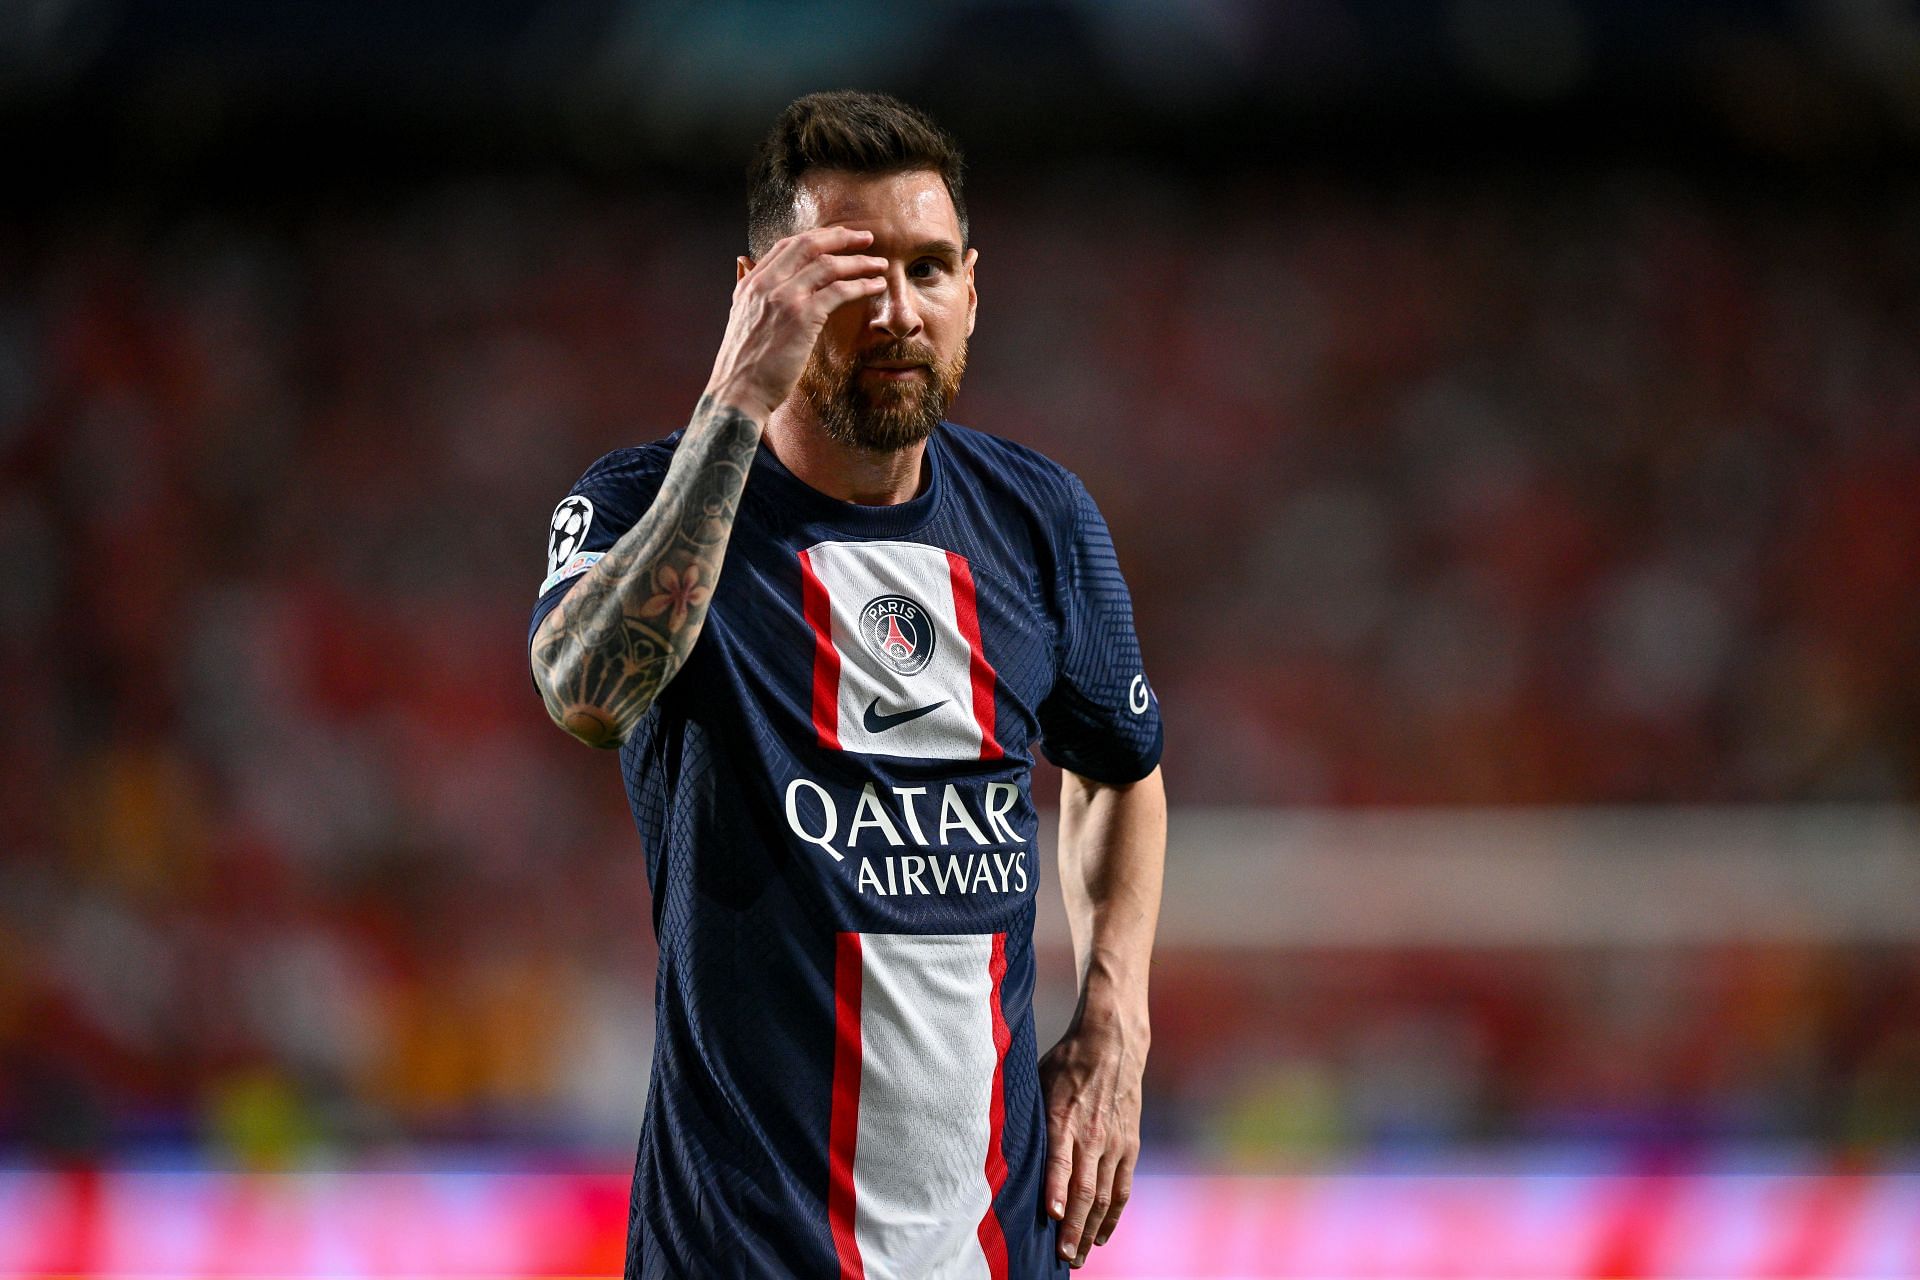 Messi é idolatrado ao final do jogo contra Reims e tira até foto